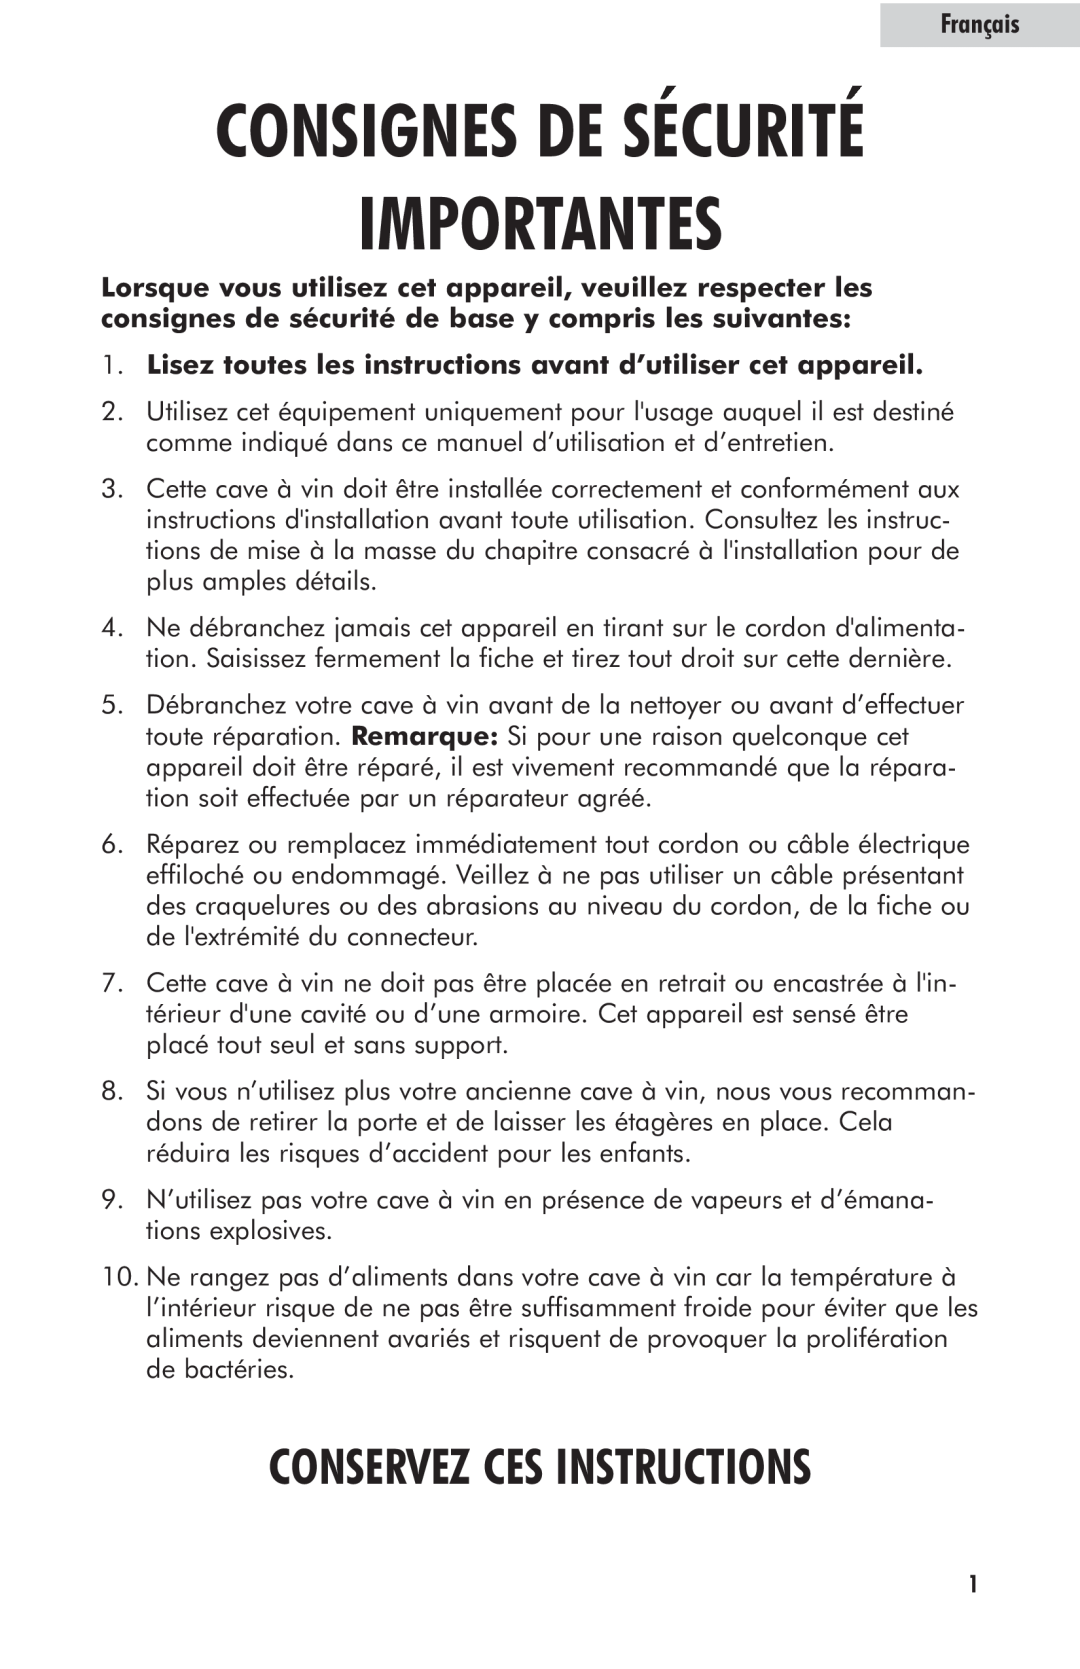 Haier HVFM24B user manual Importantes, Consignes De Sécurité, Conservez Ces Instructions, Français 